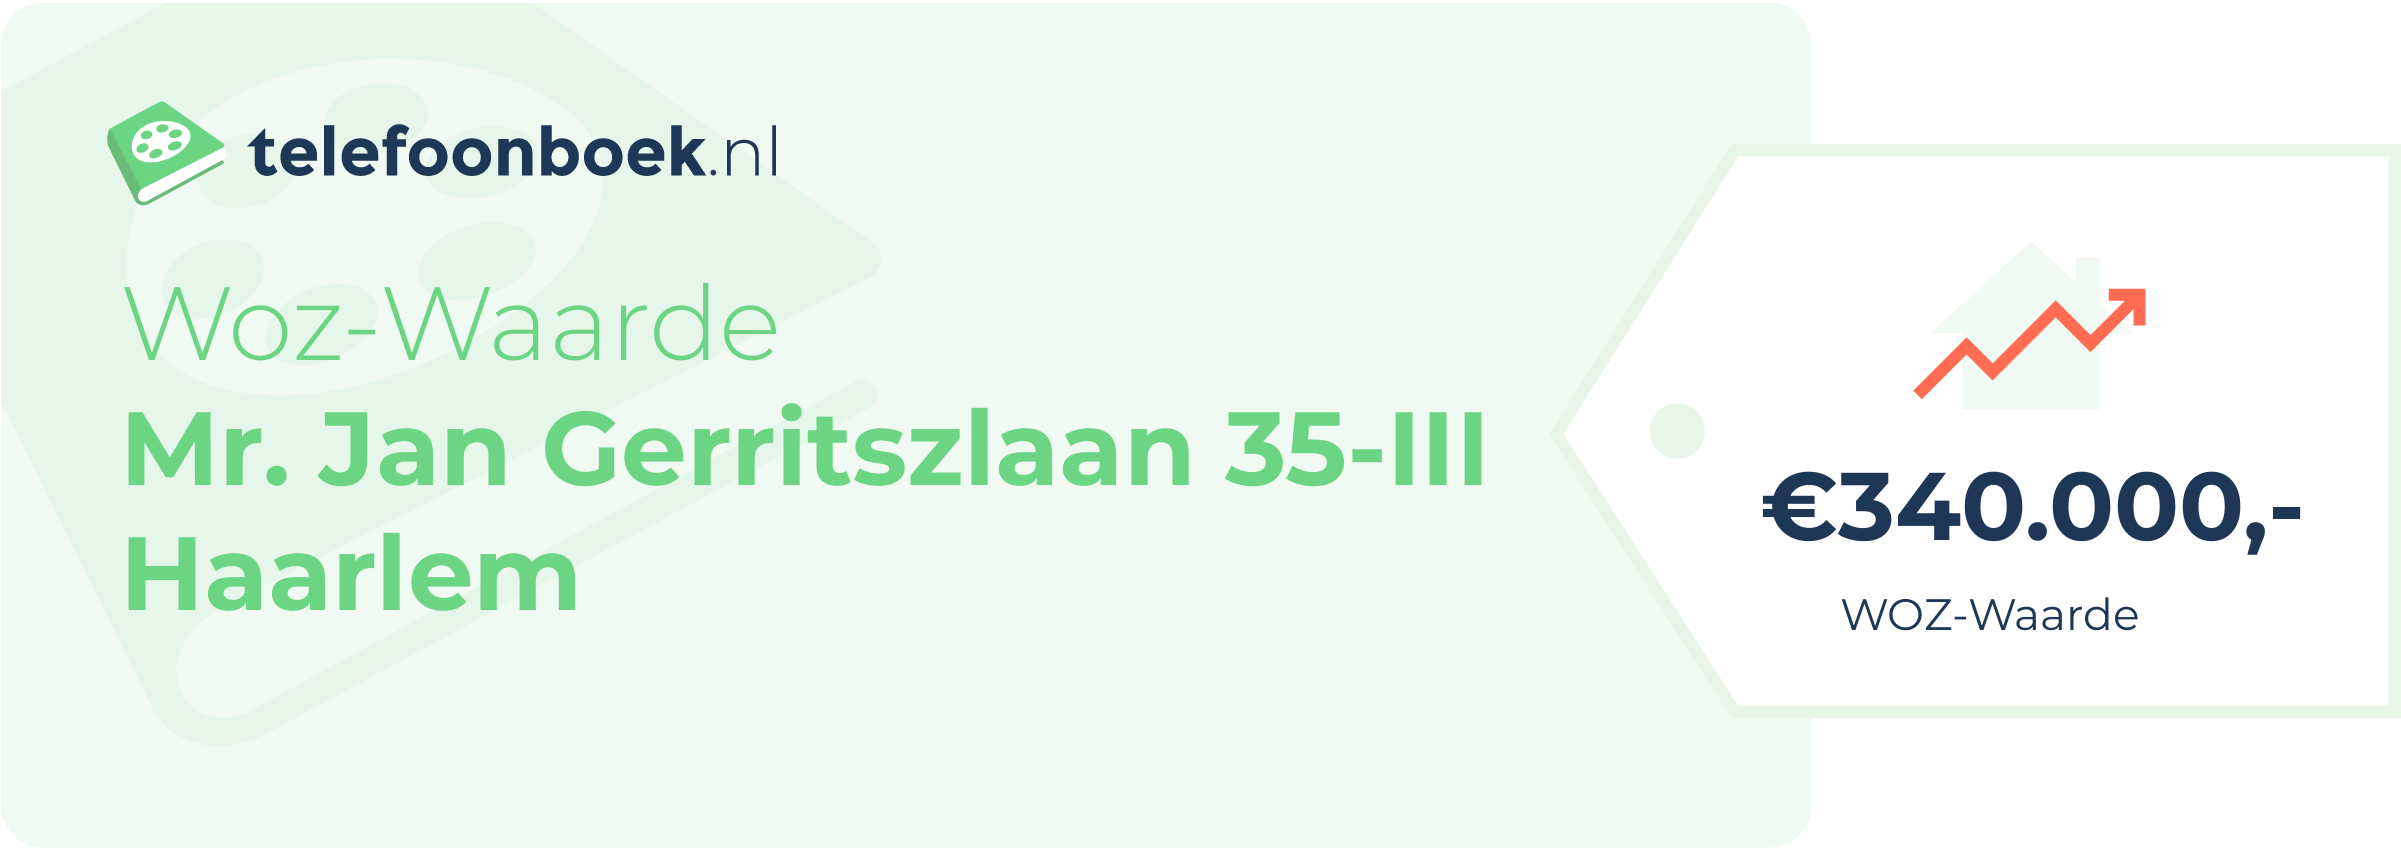 WOZ-waarde Mr. Jan Gerritszlaan 35-III Haarlem